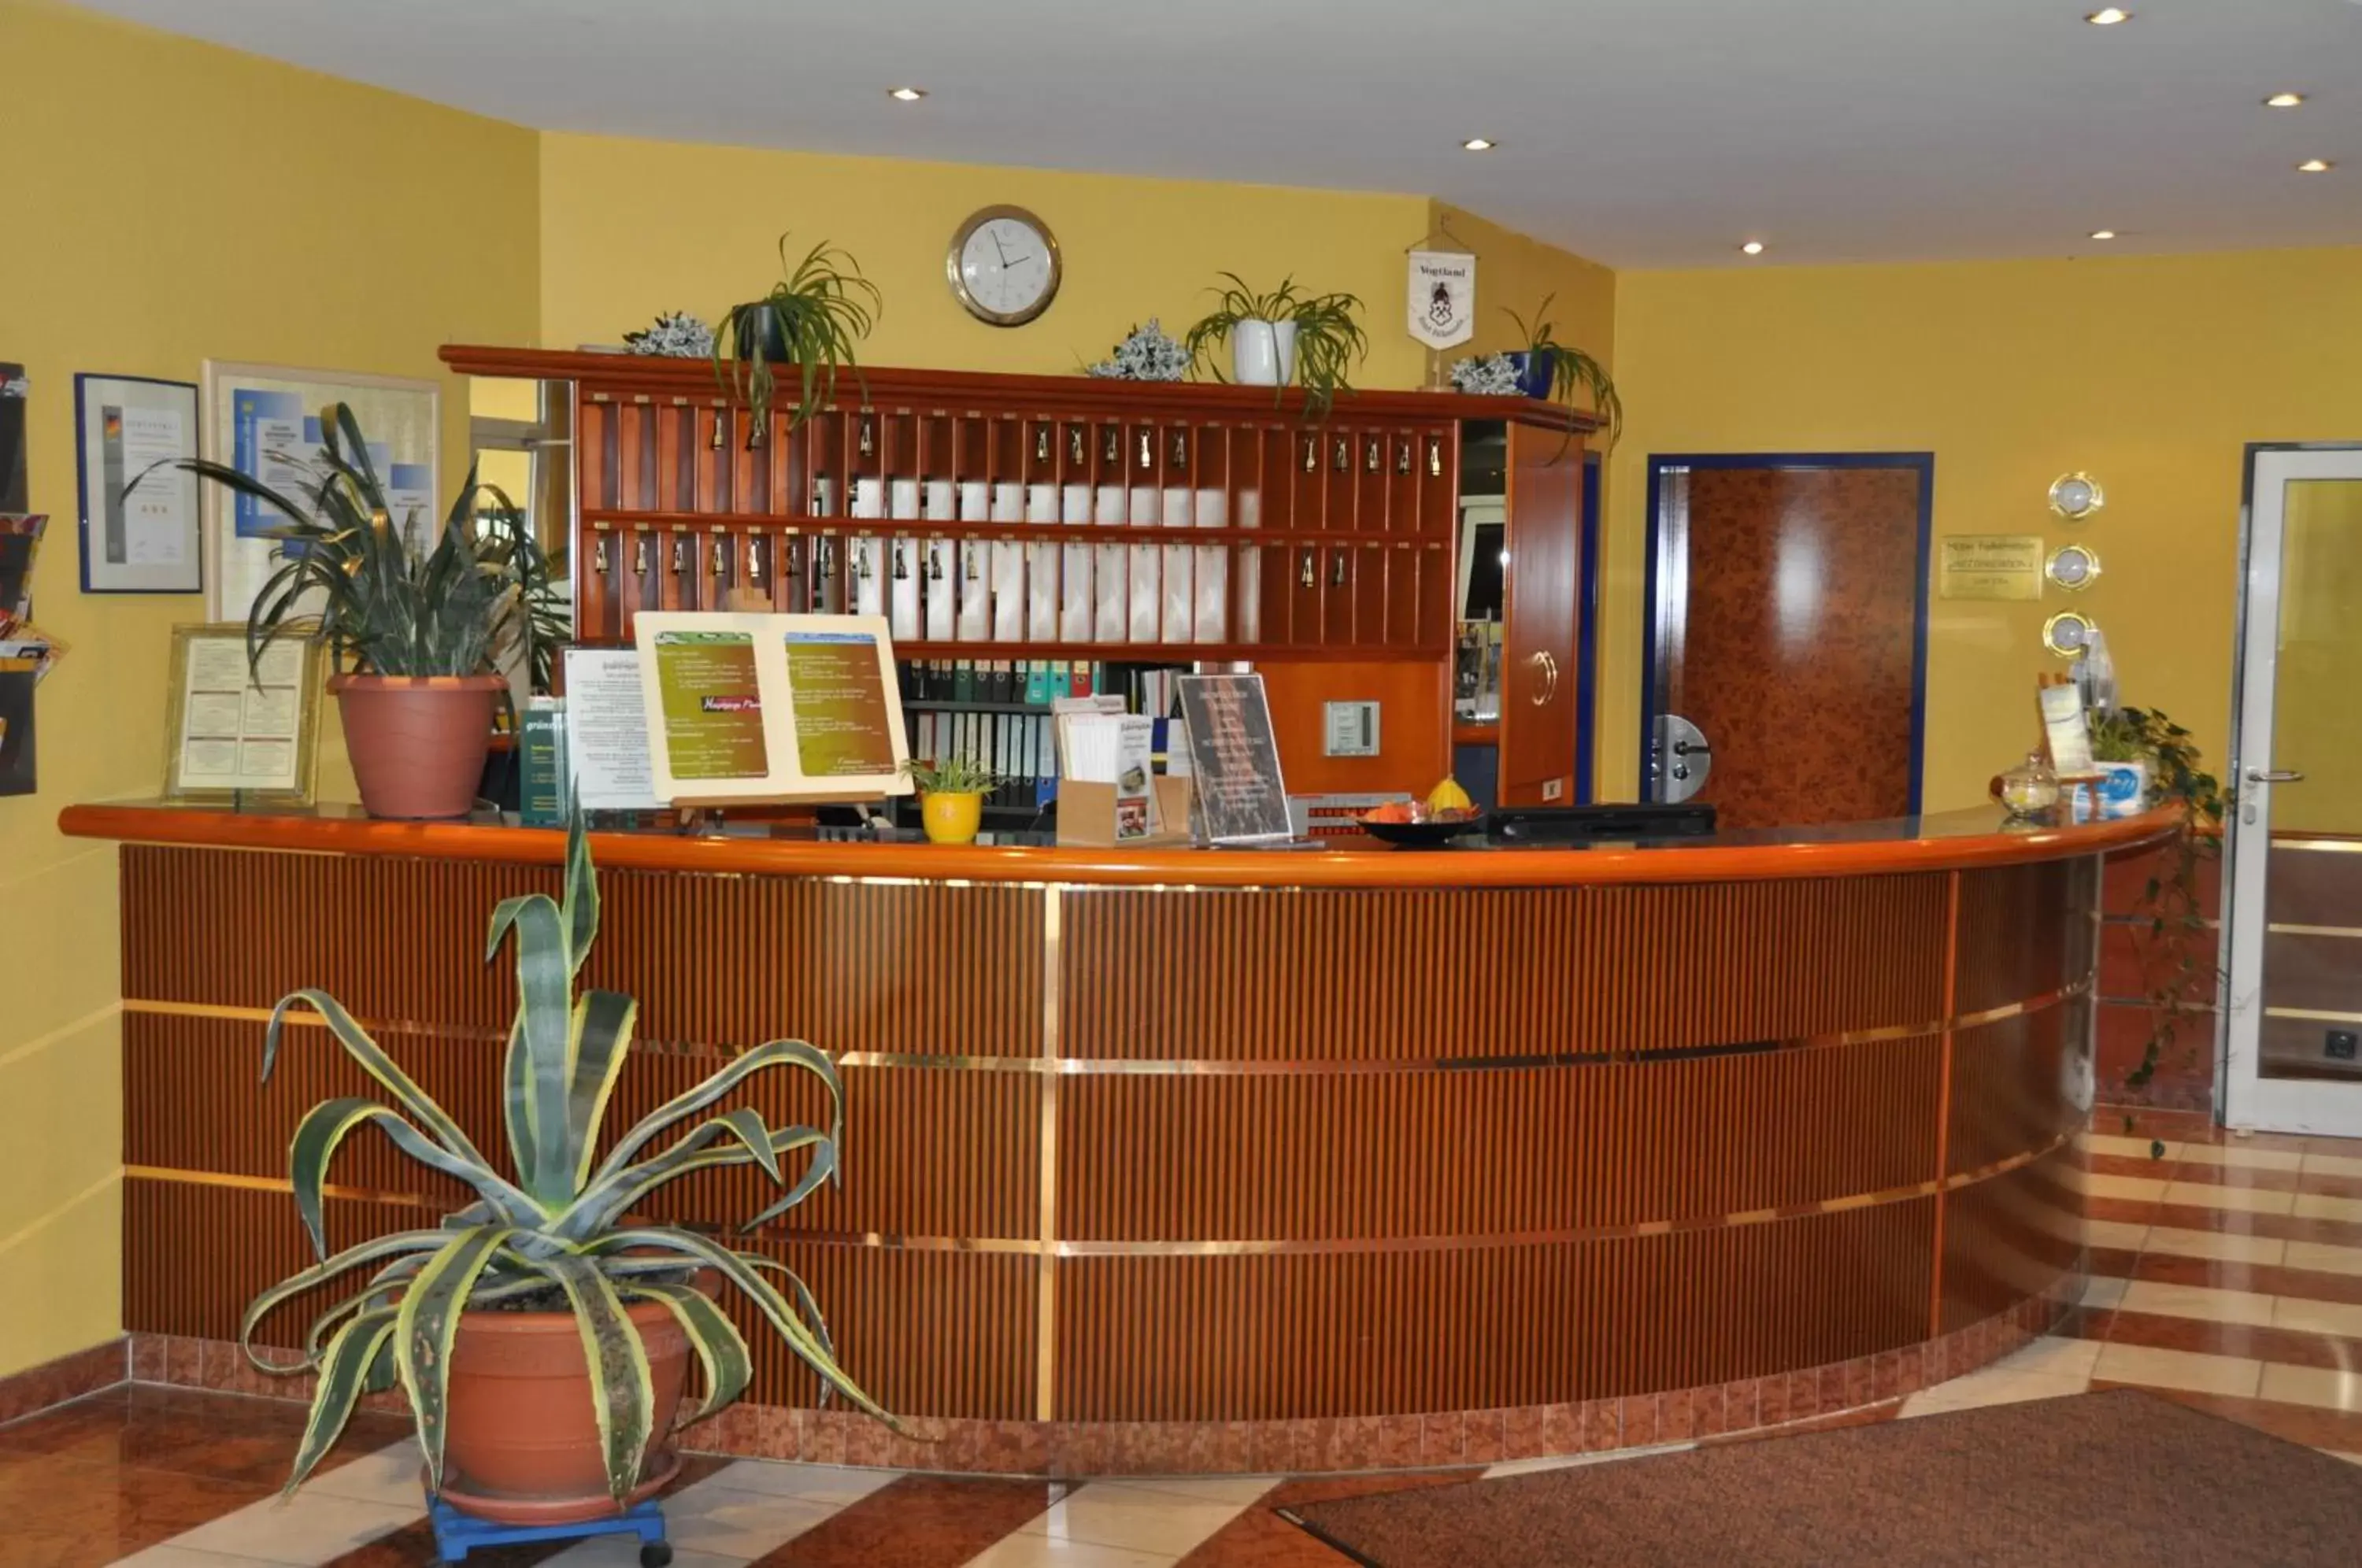 Lobby or reception, Lobby/Reception in Hotel Falkenstein